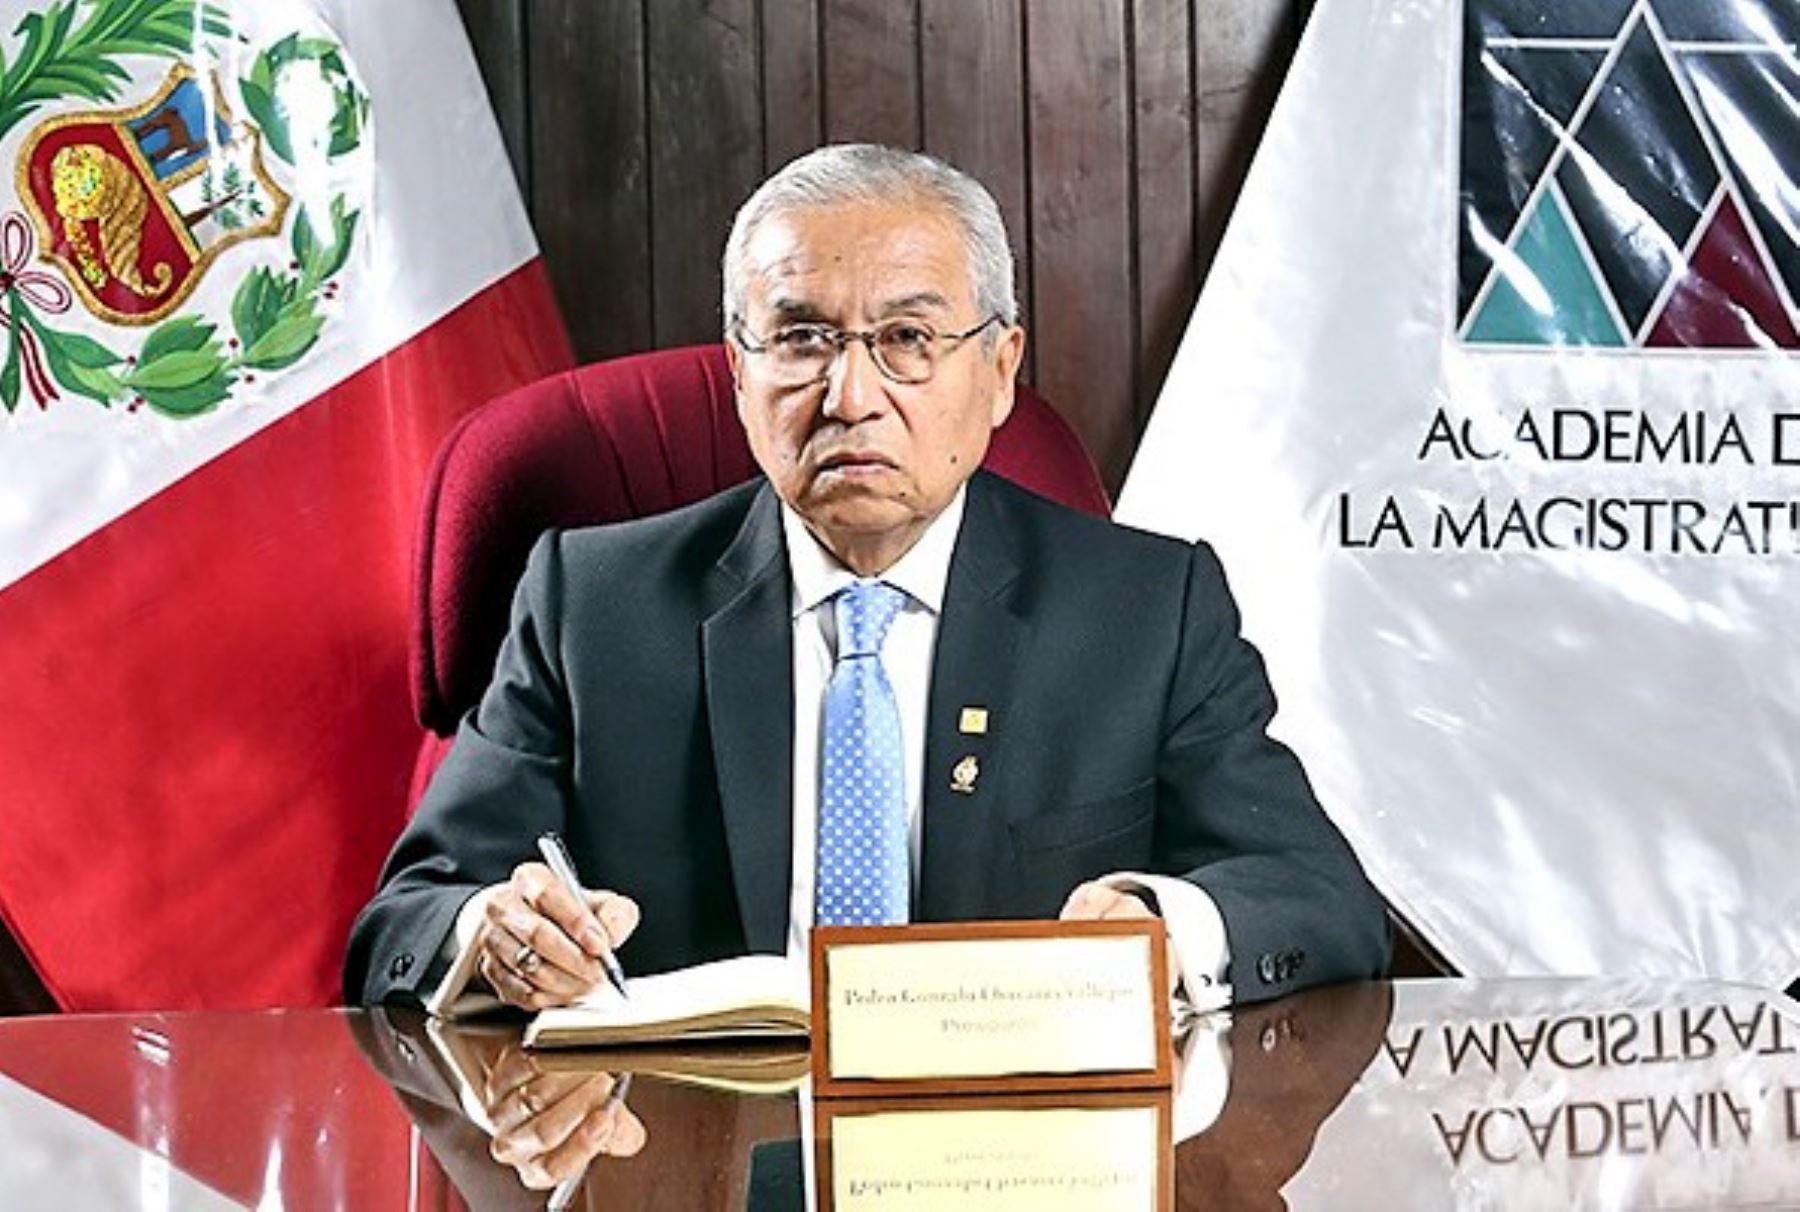 Presidente de la Academia de la Magistratura, Pedro Chávarry Vallejos. Foto: Andina.